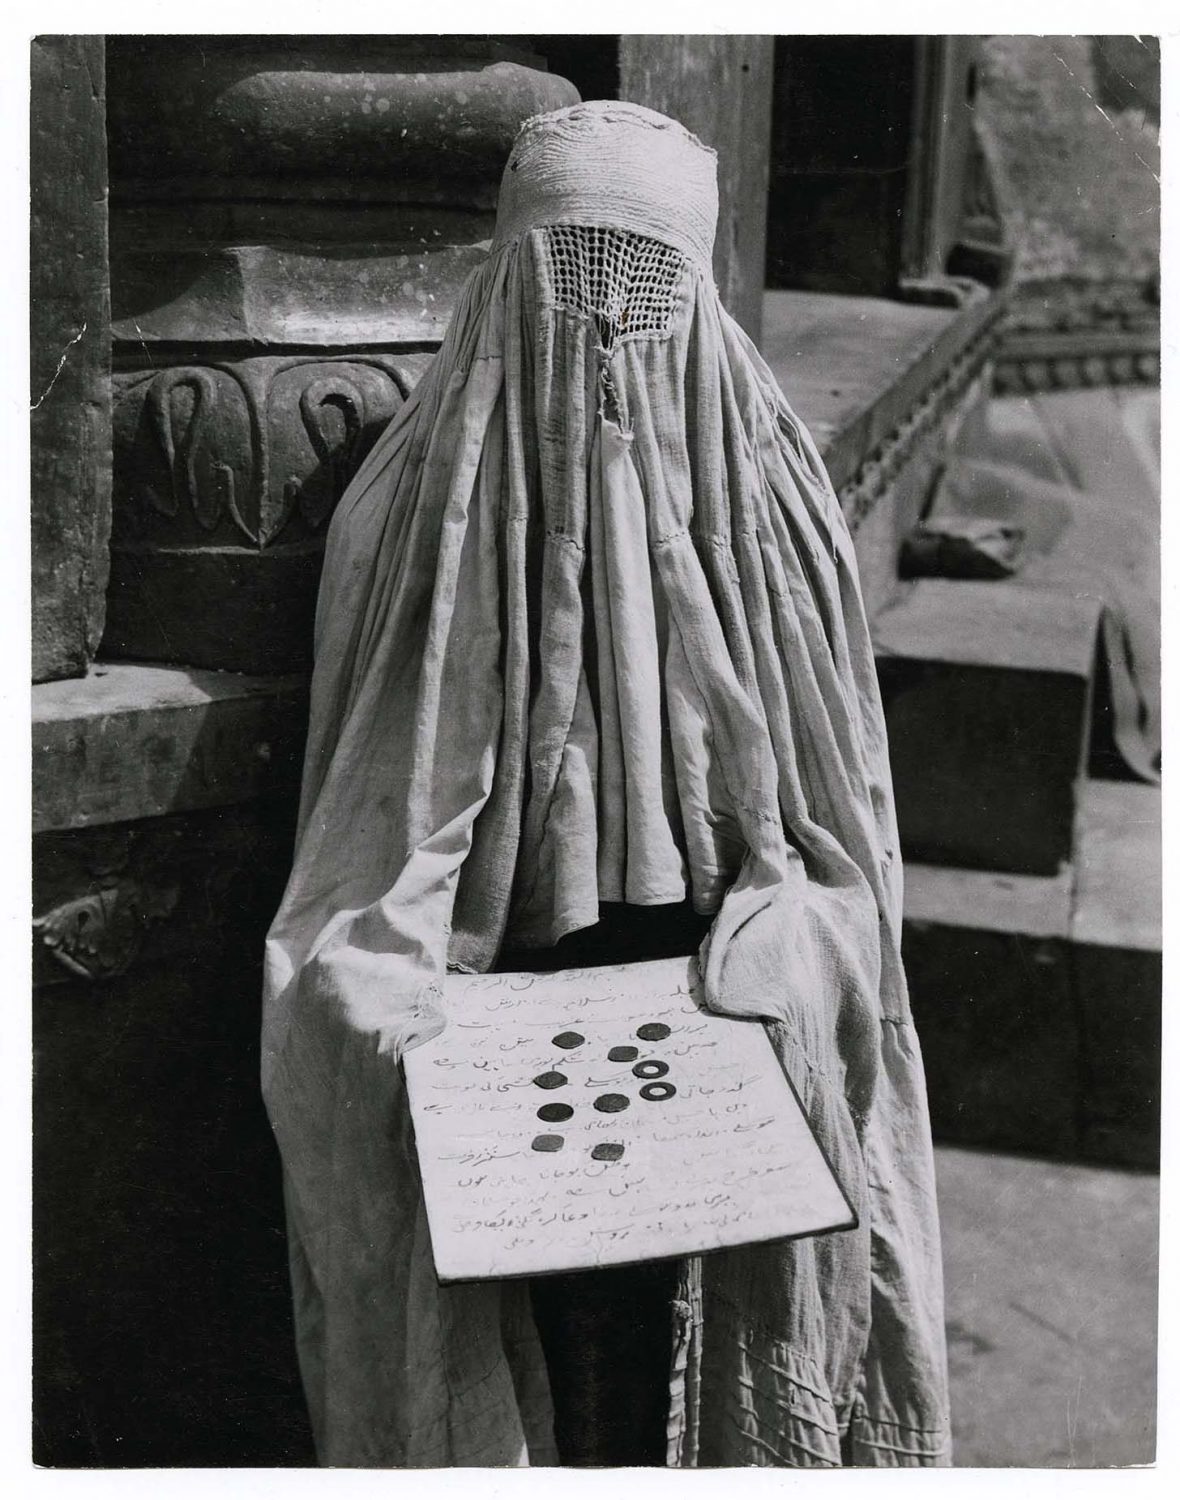 Margaret Bourke-White — AWARE Women artists / Femmes artistes